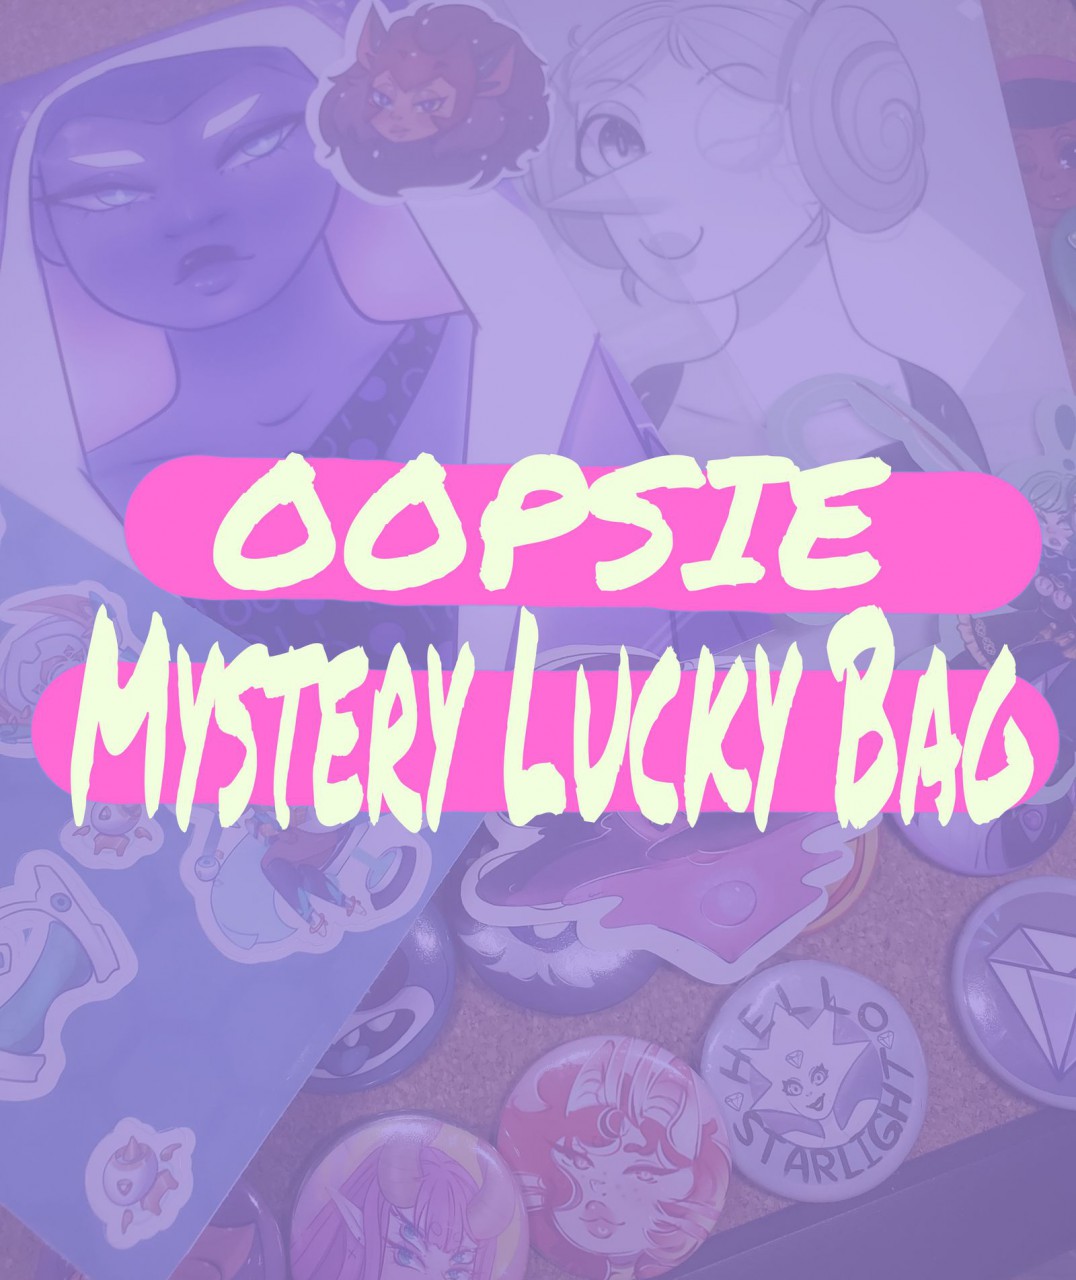 Mystery oopsie Bag 